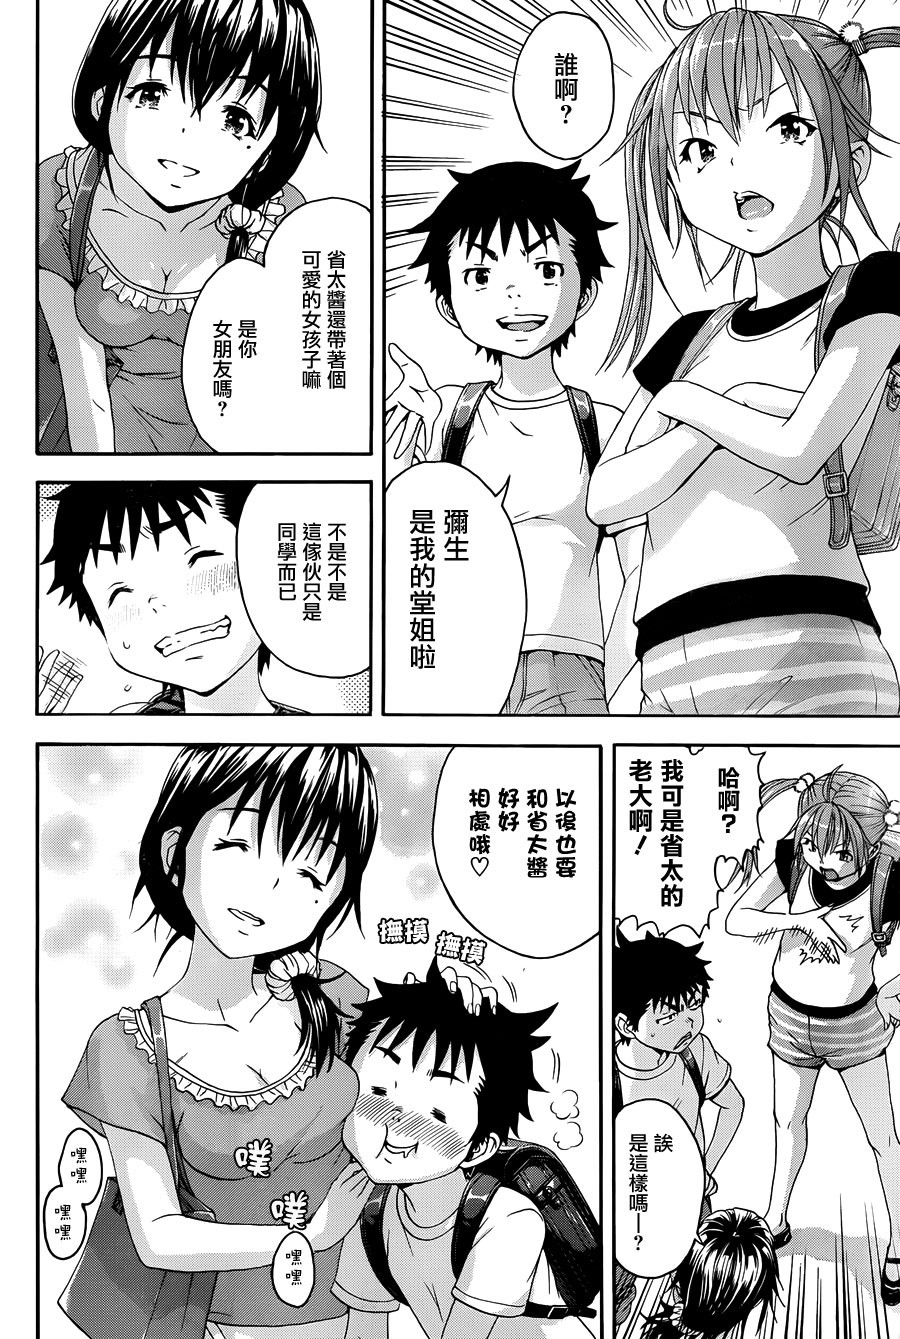 Mujaki no Rakuen - Chapter 41 - Page 3